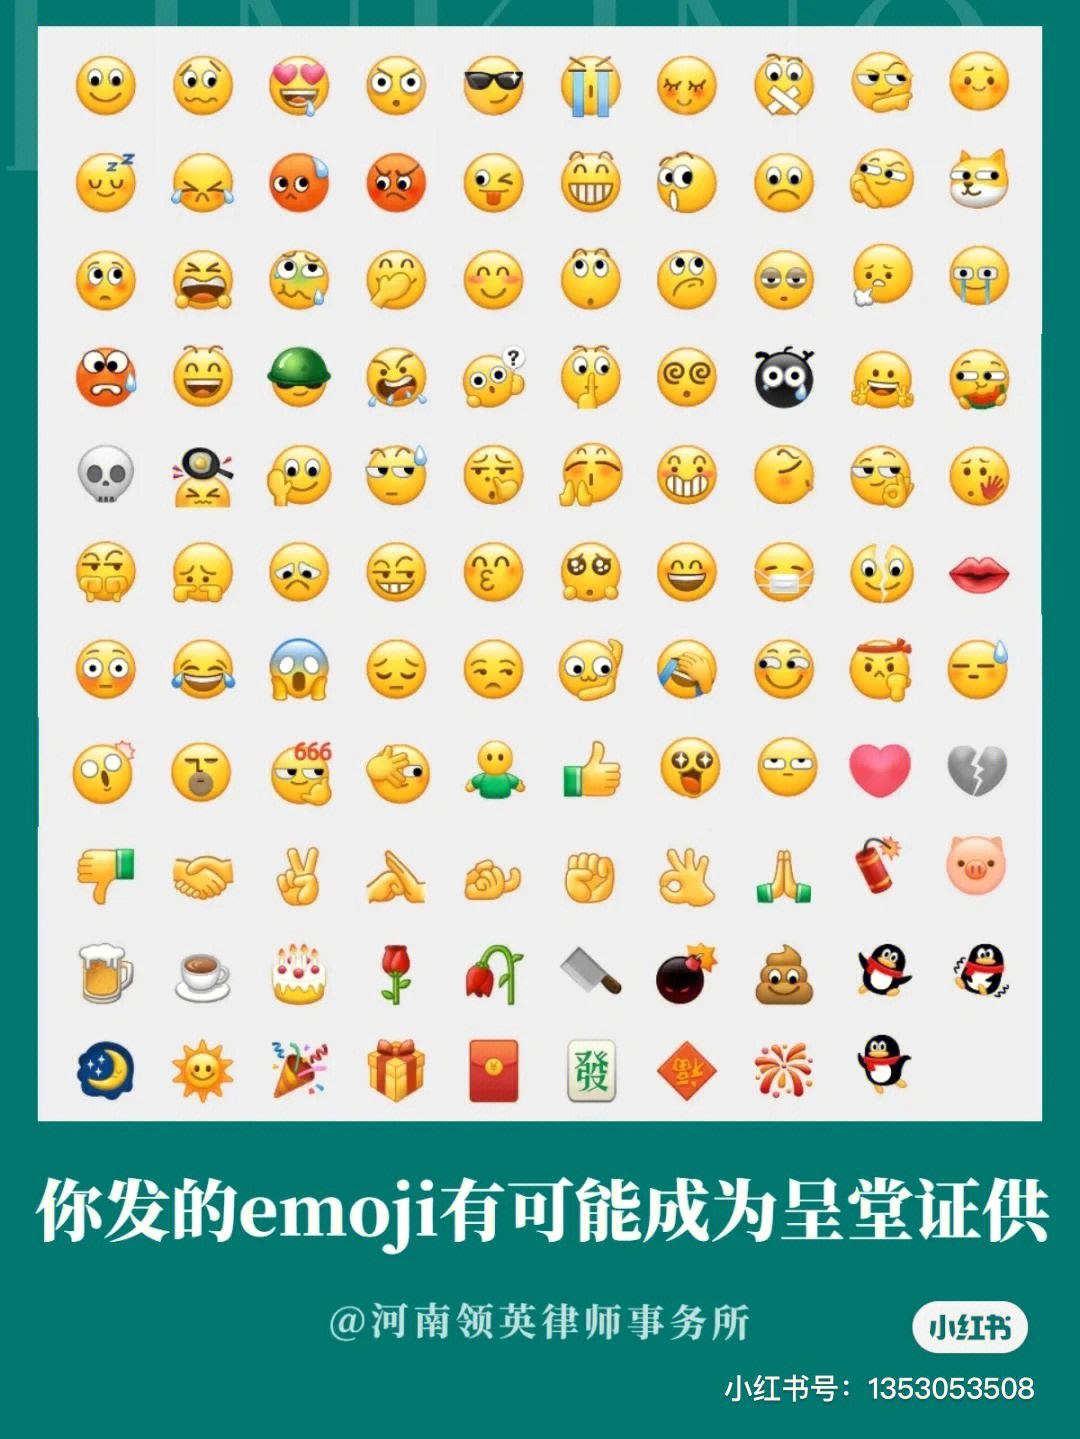 微信扇子的emoji表情图片